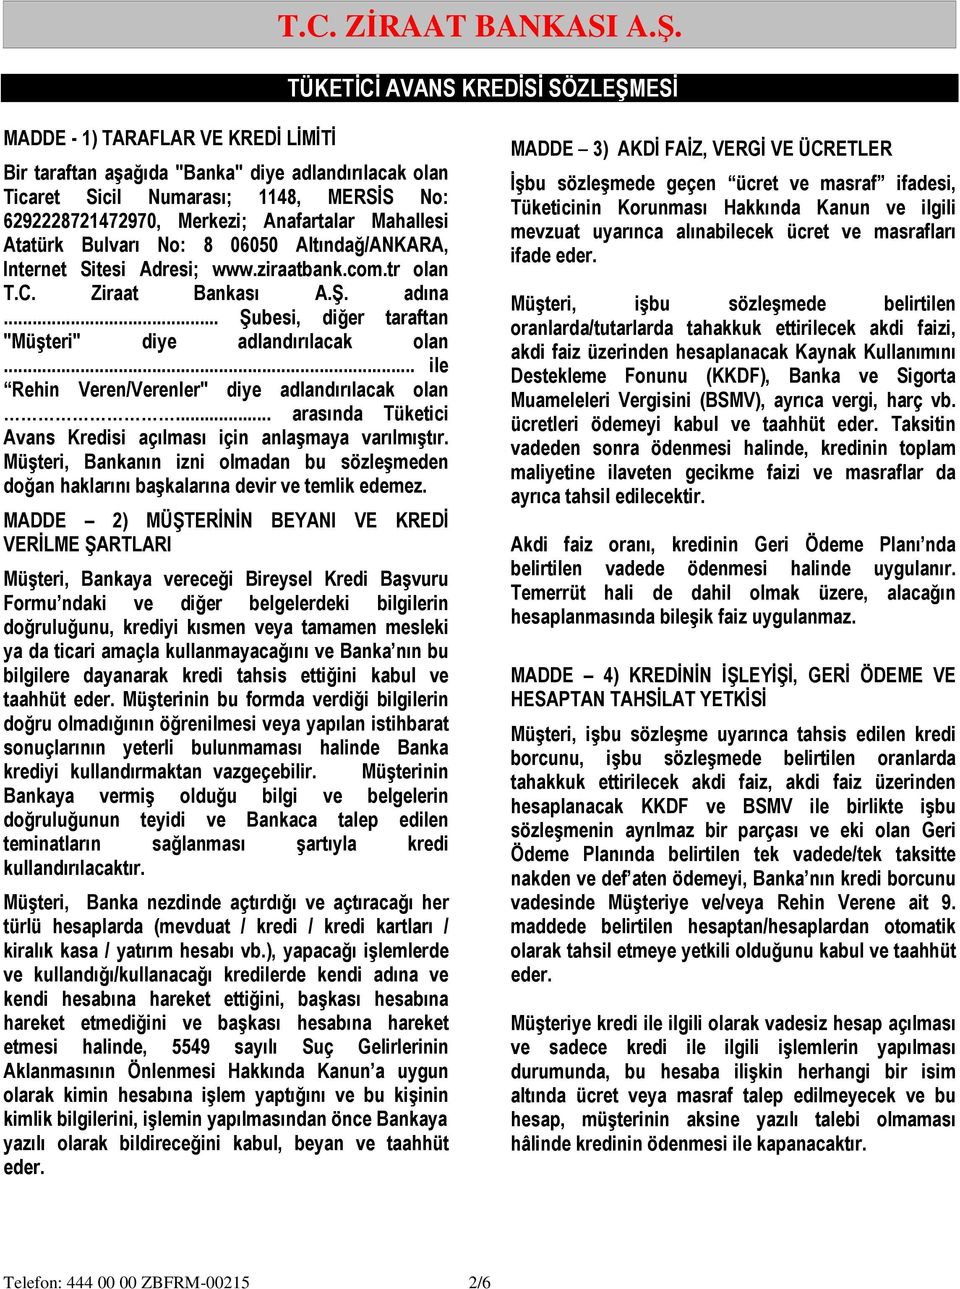 Anafartalar Mahallesi Atatürk Bulvarı No: 8 06050 Altındağ/ANKARA, Internet Sitesi Adresi; www.ziraatbank.com.tr olan T.C. Ziraat Bankası A.Ş. adına.